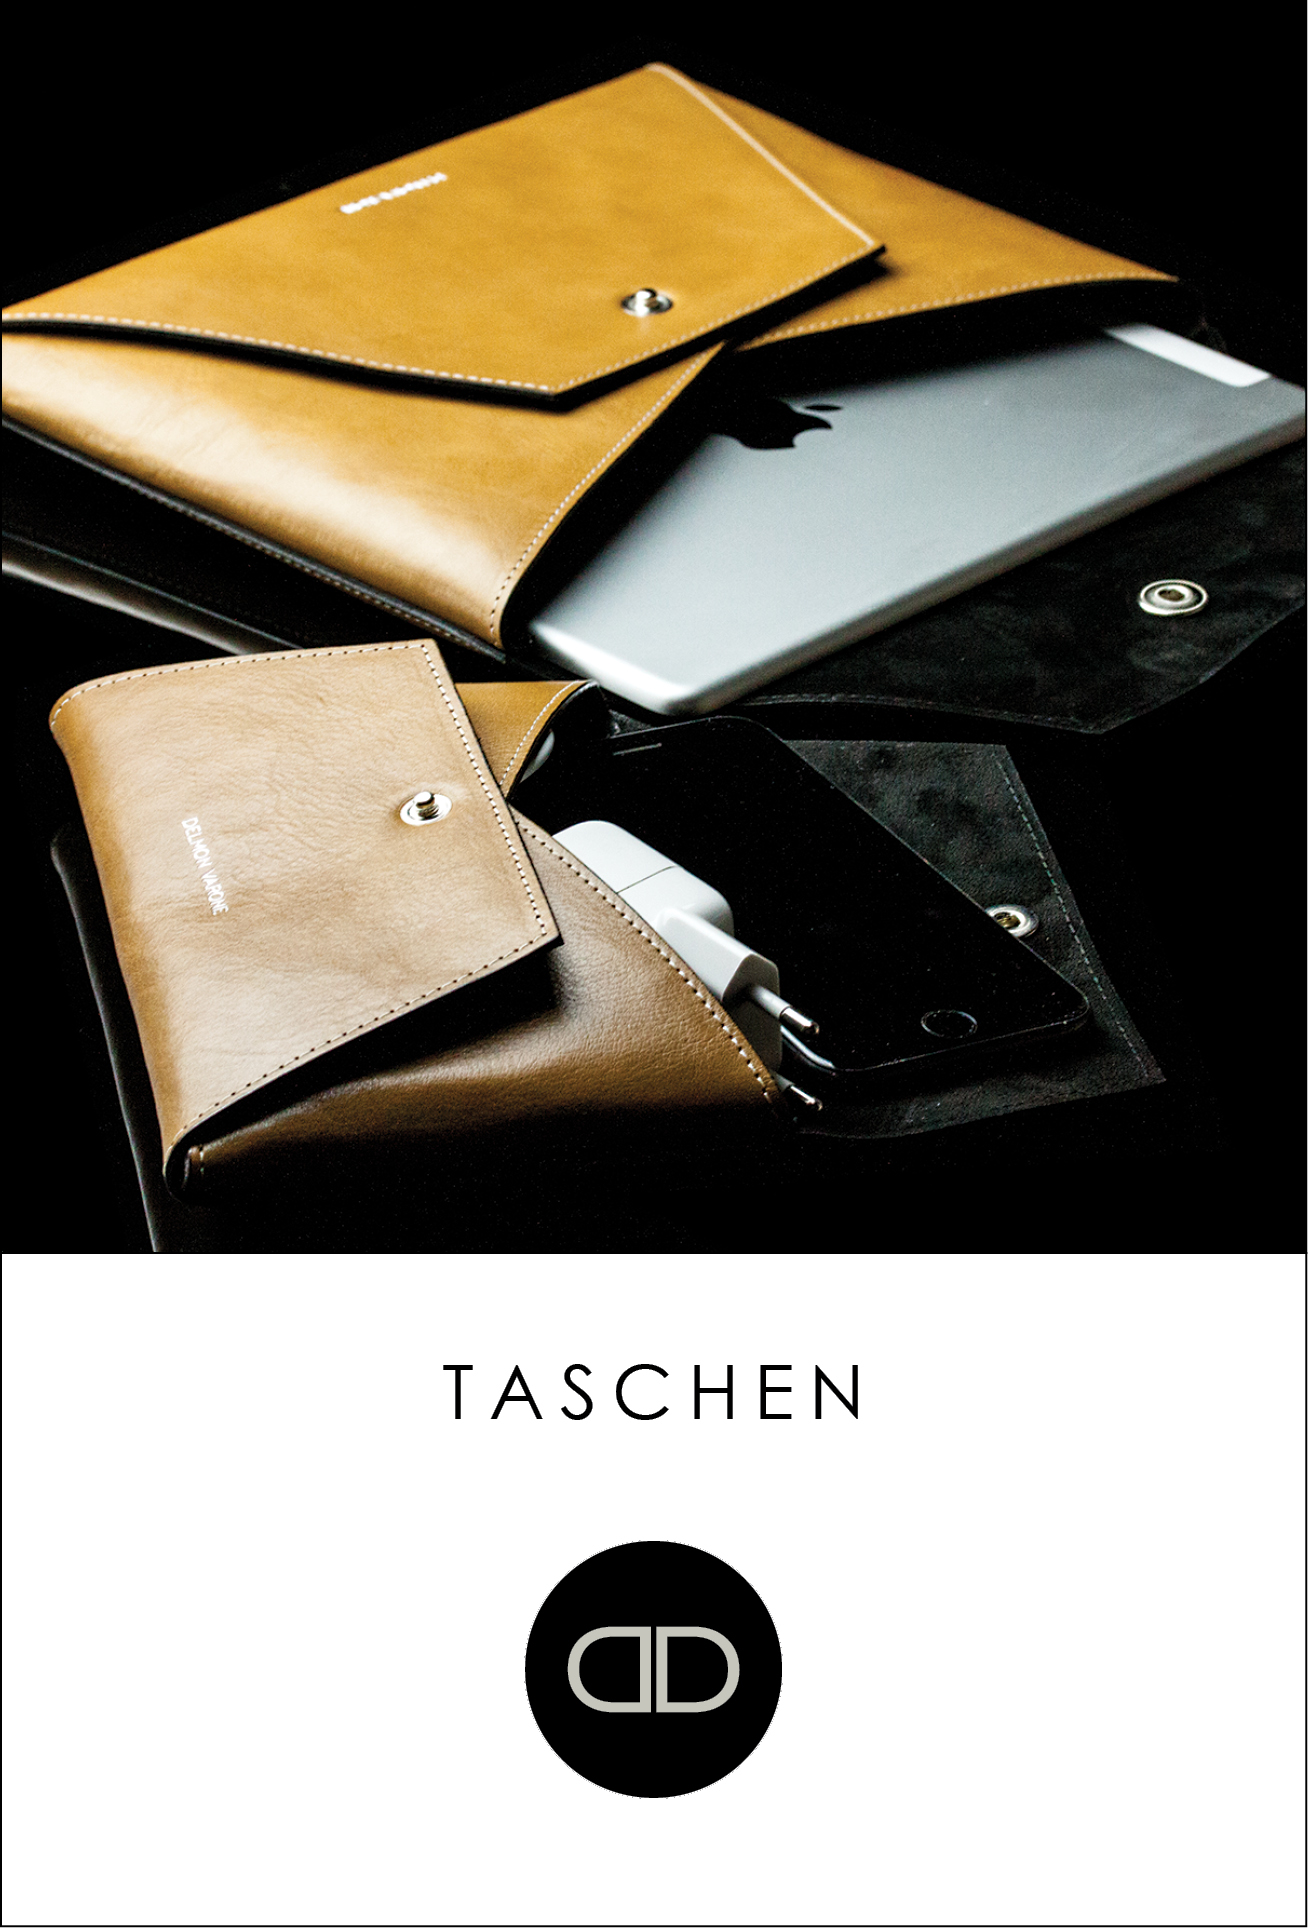 exclusive macbook iapd notebook taschen